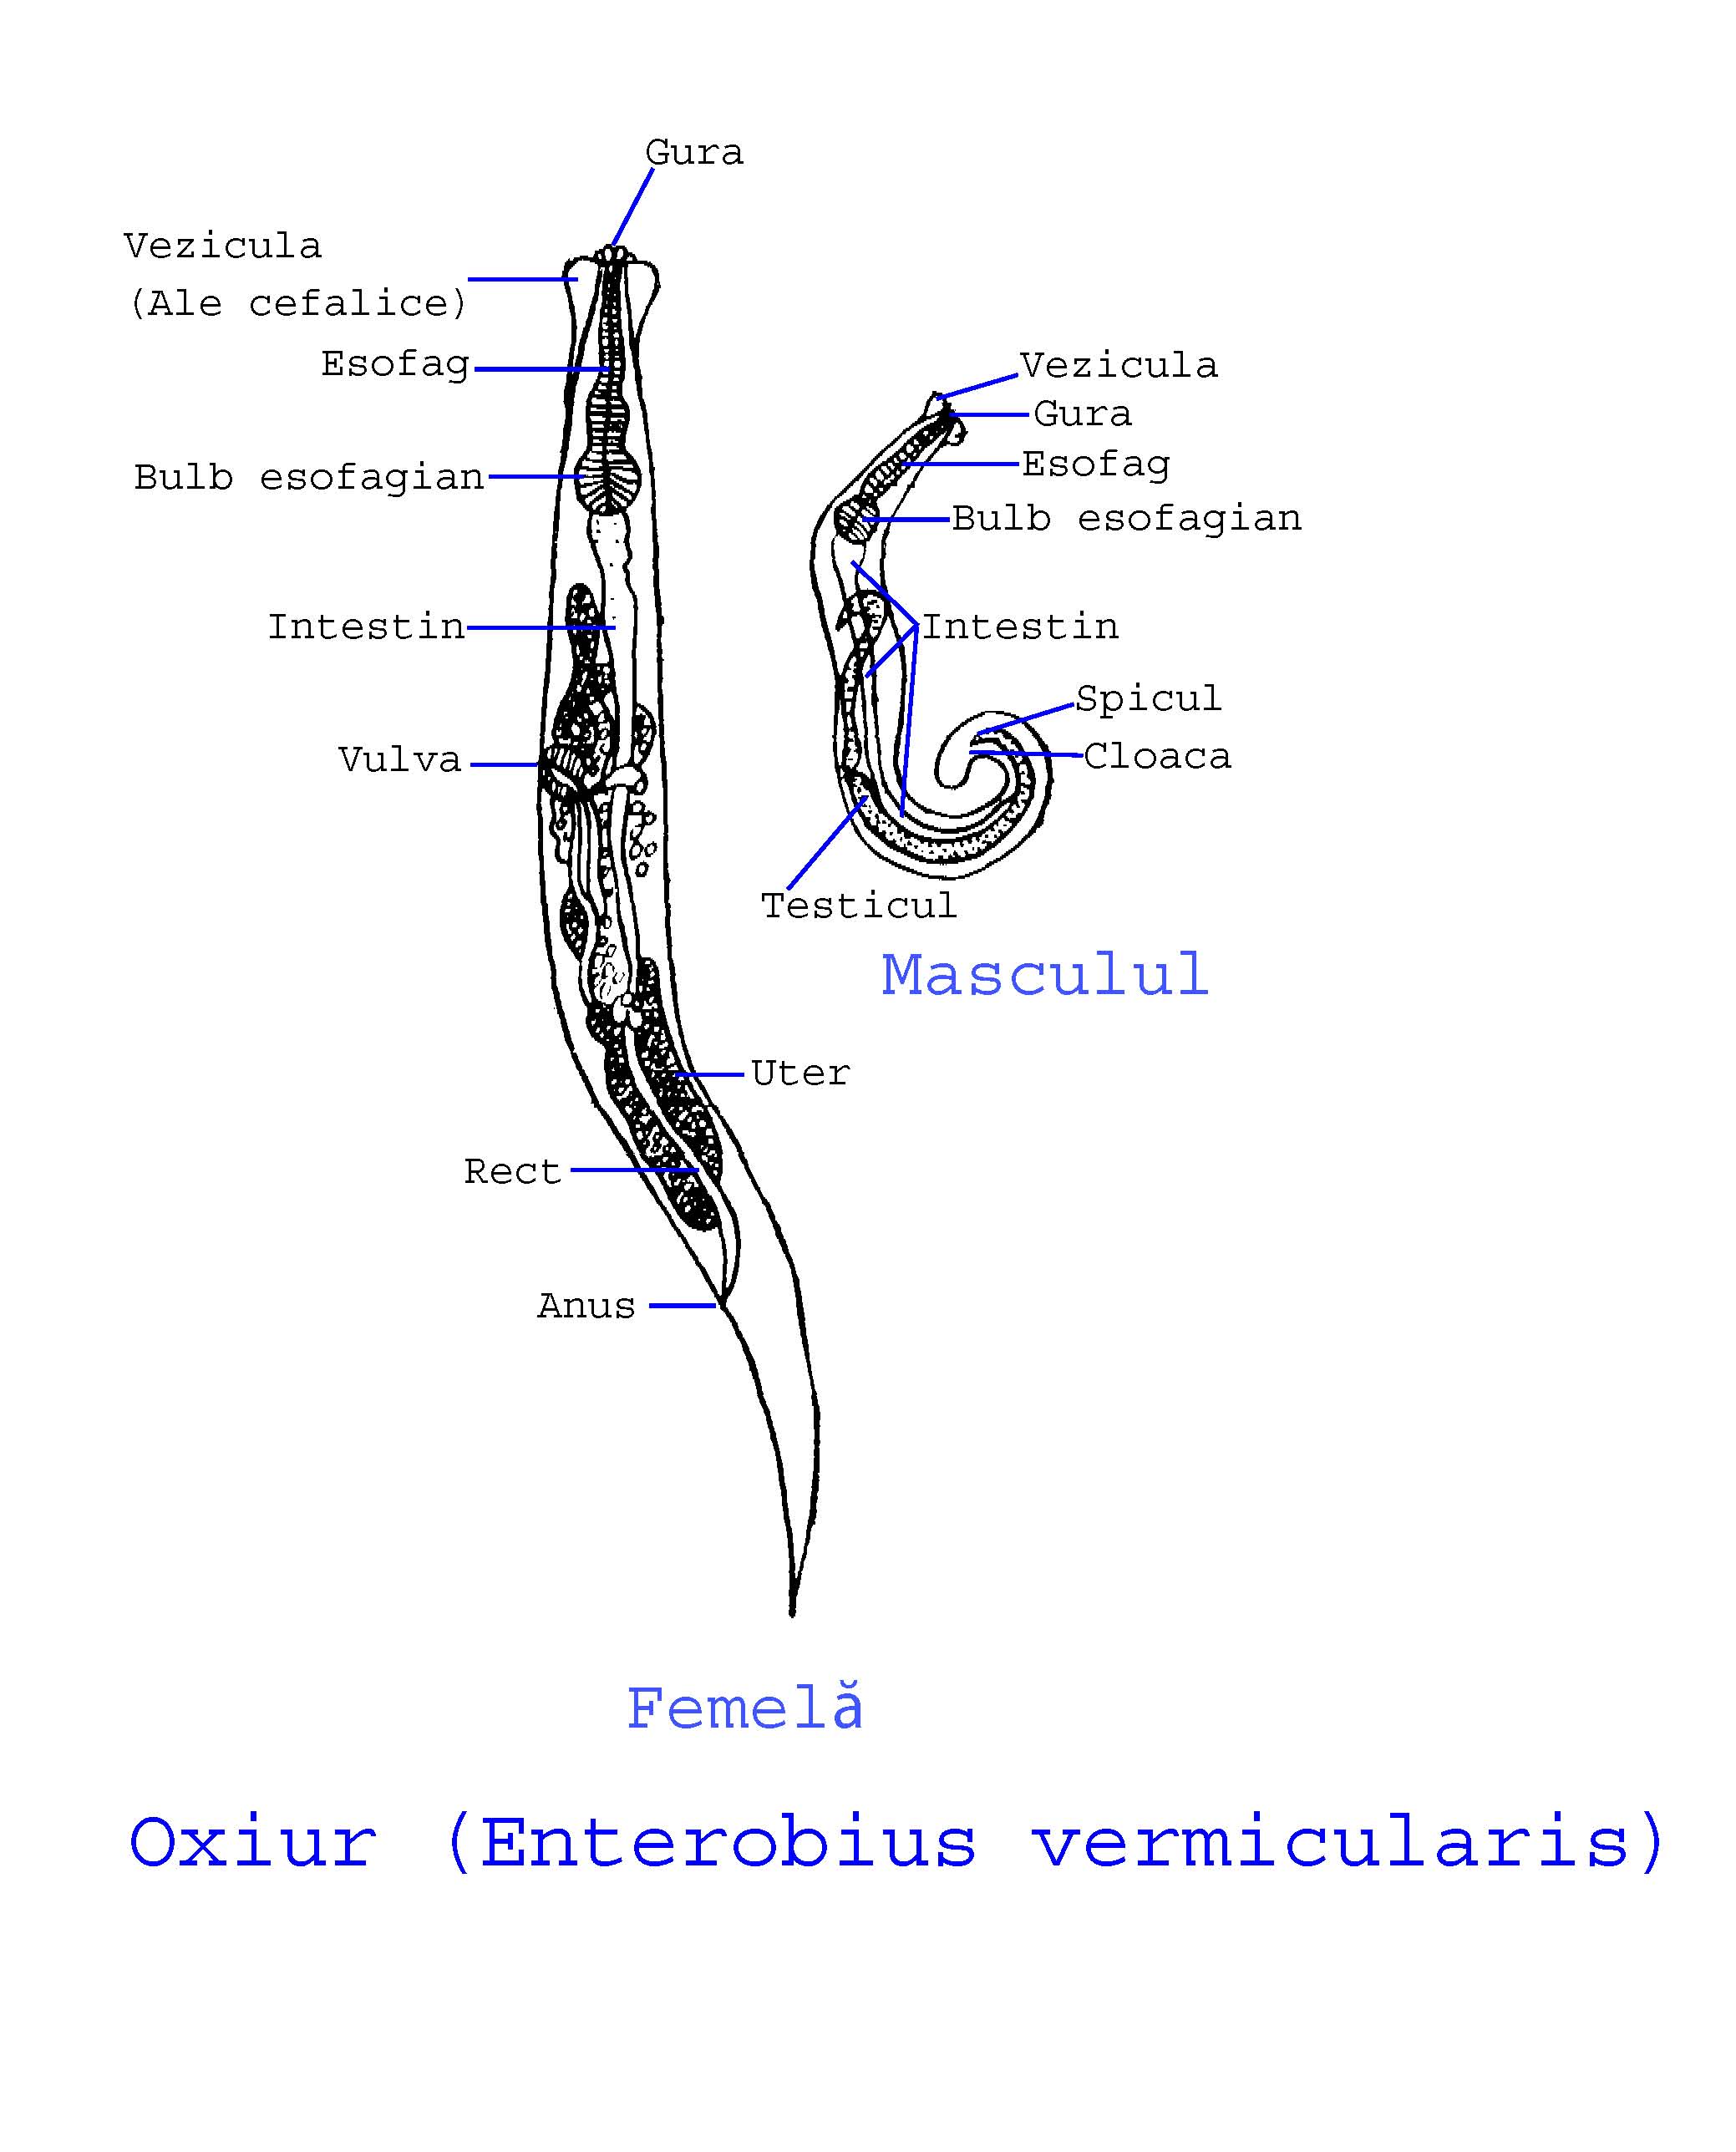 jajasca enterobius vermicularis)